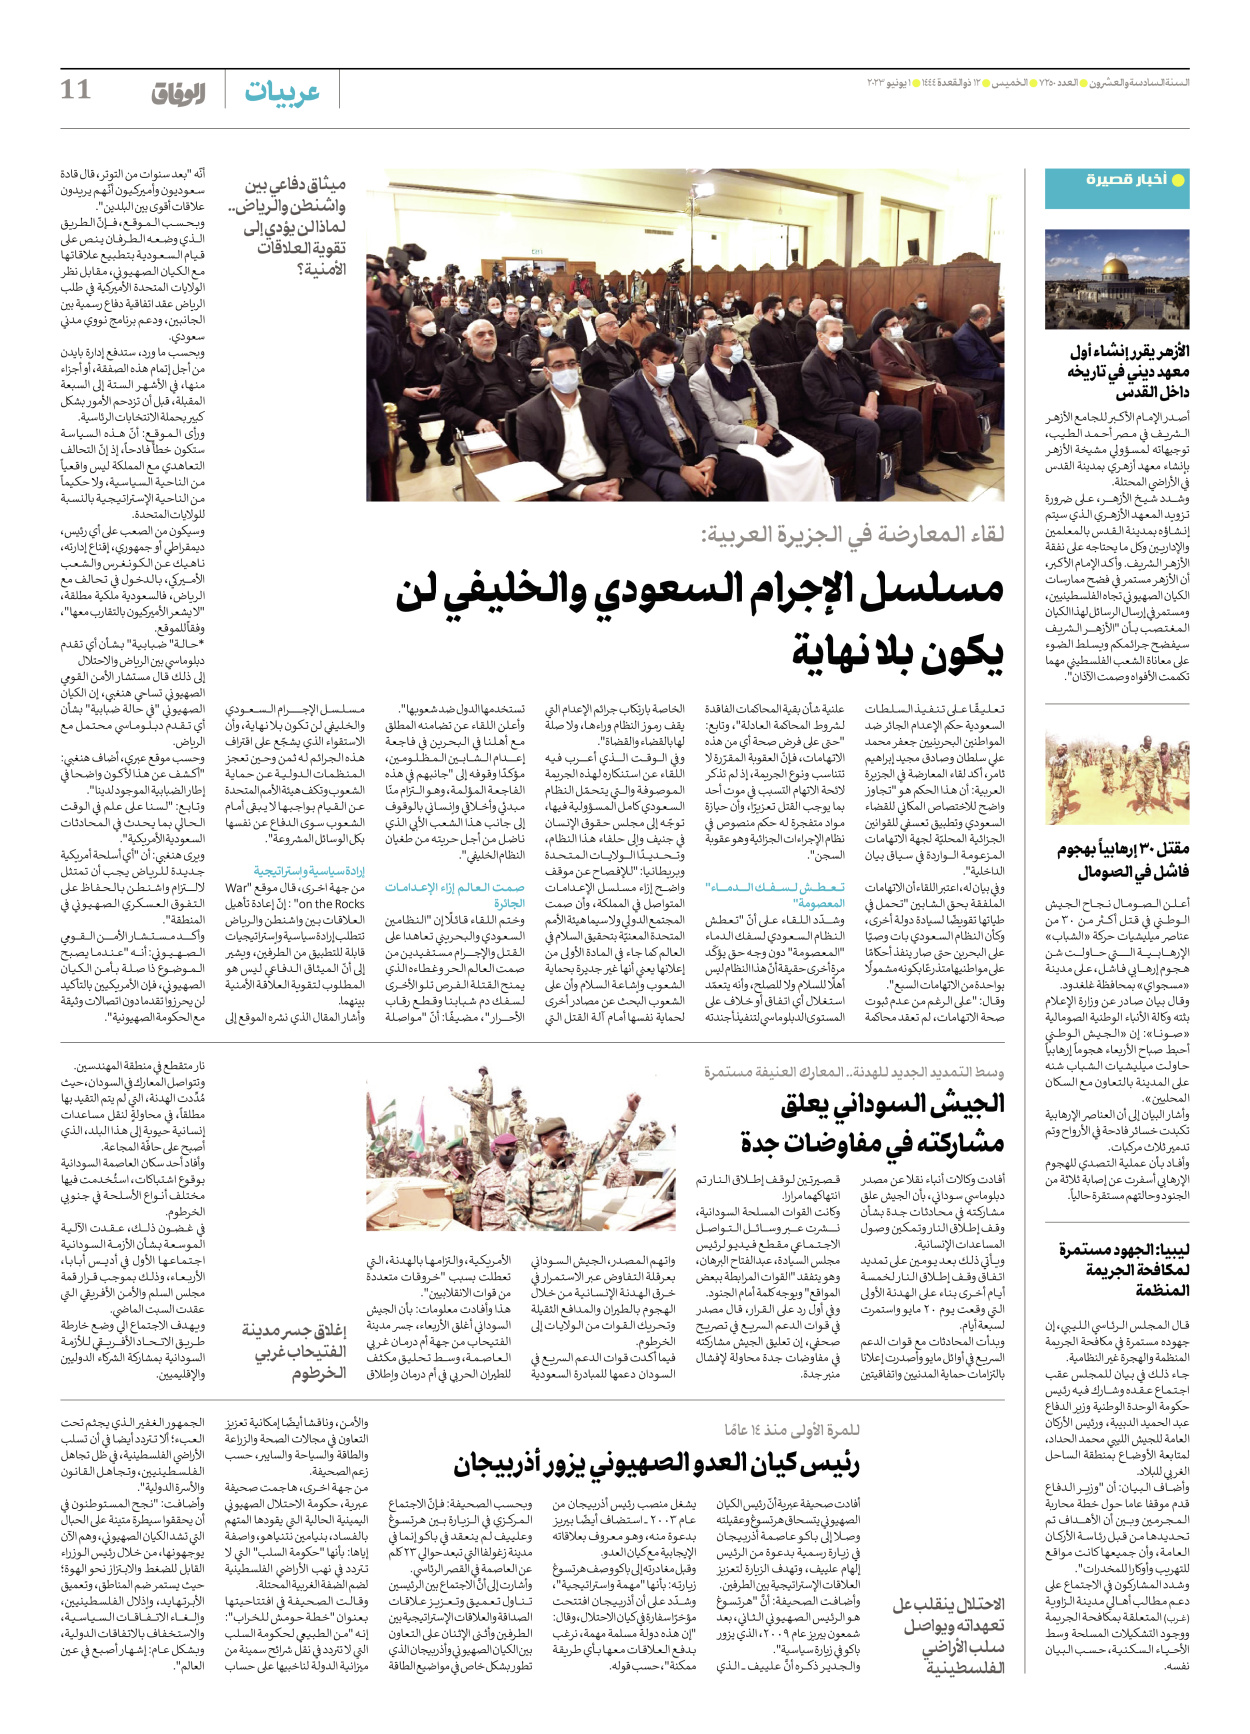 صحیفة ایران الدولیة الوفاق - العدد سبعة آلاف ومائتان وخمسون - ٠١ يونيو ٢٠٢٣ - الصفحة ۱۱